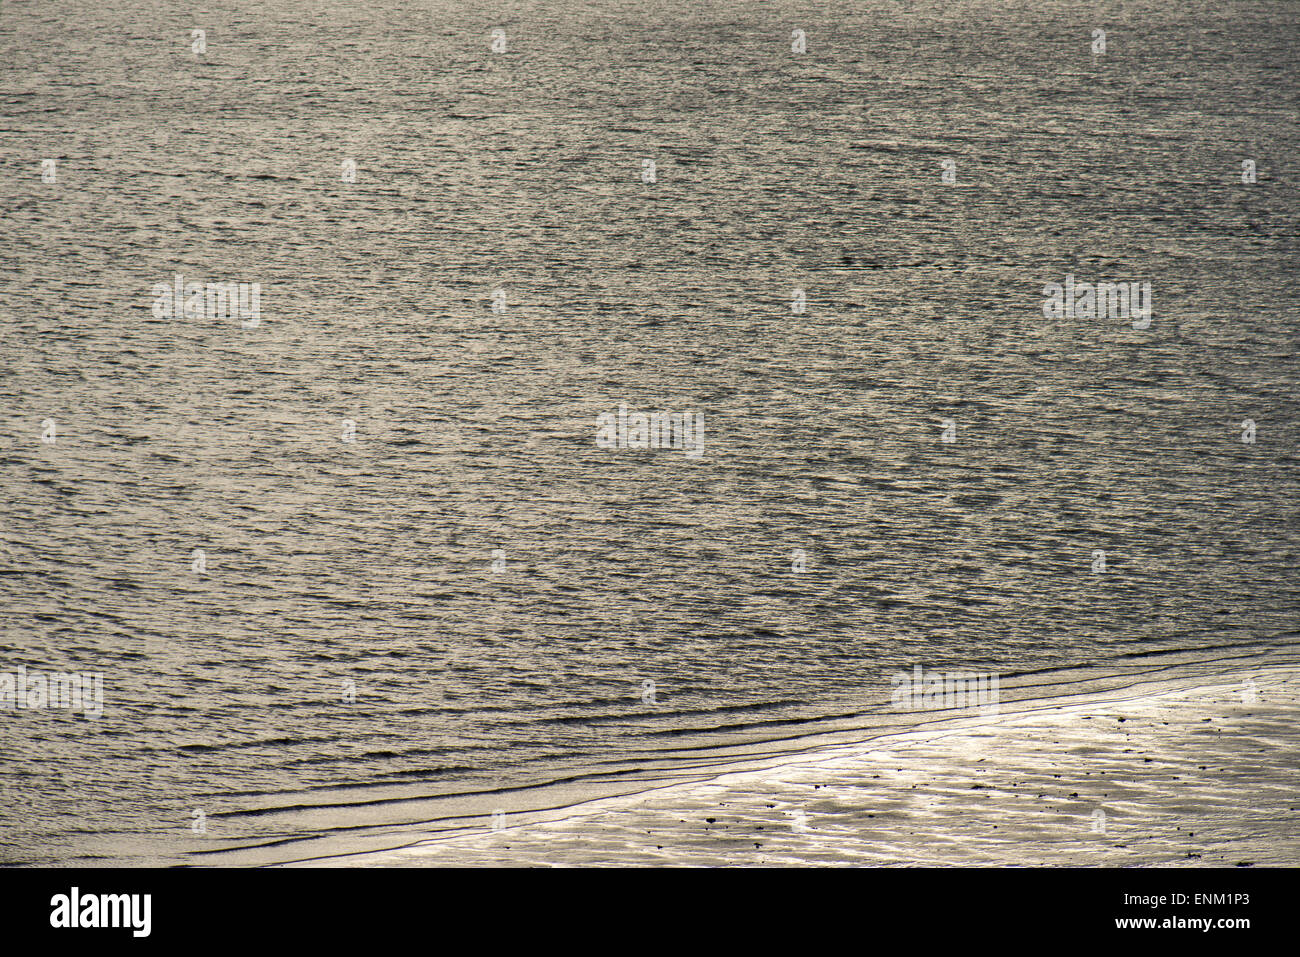 Wasser am Strand bei schwachem Licht Stockfoto